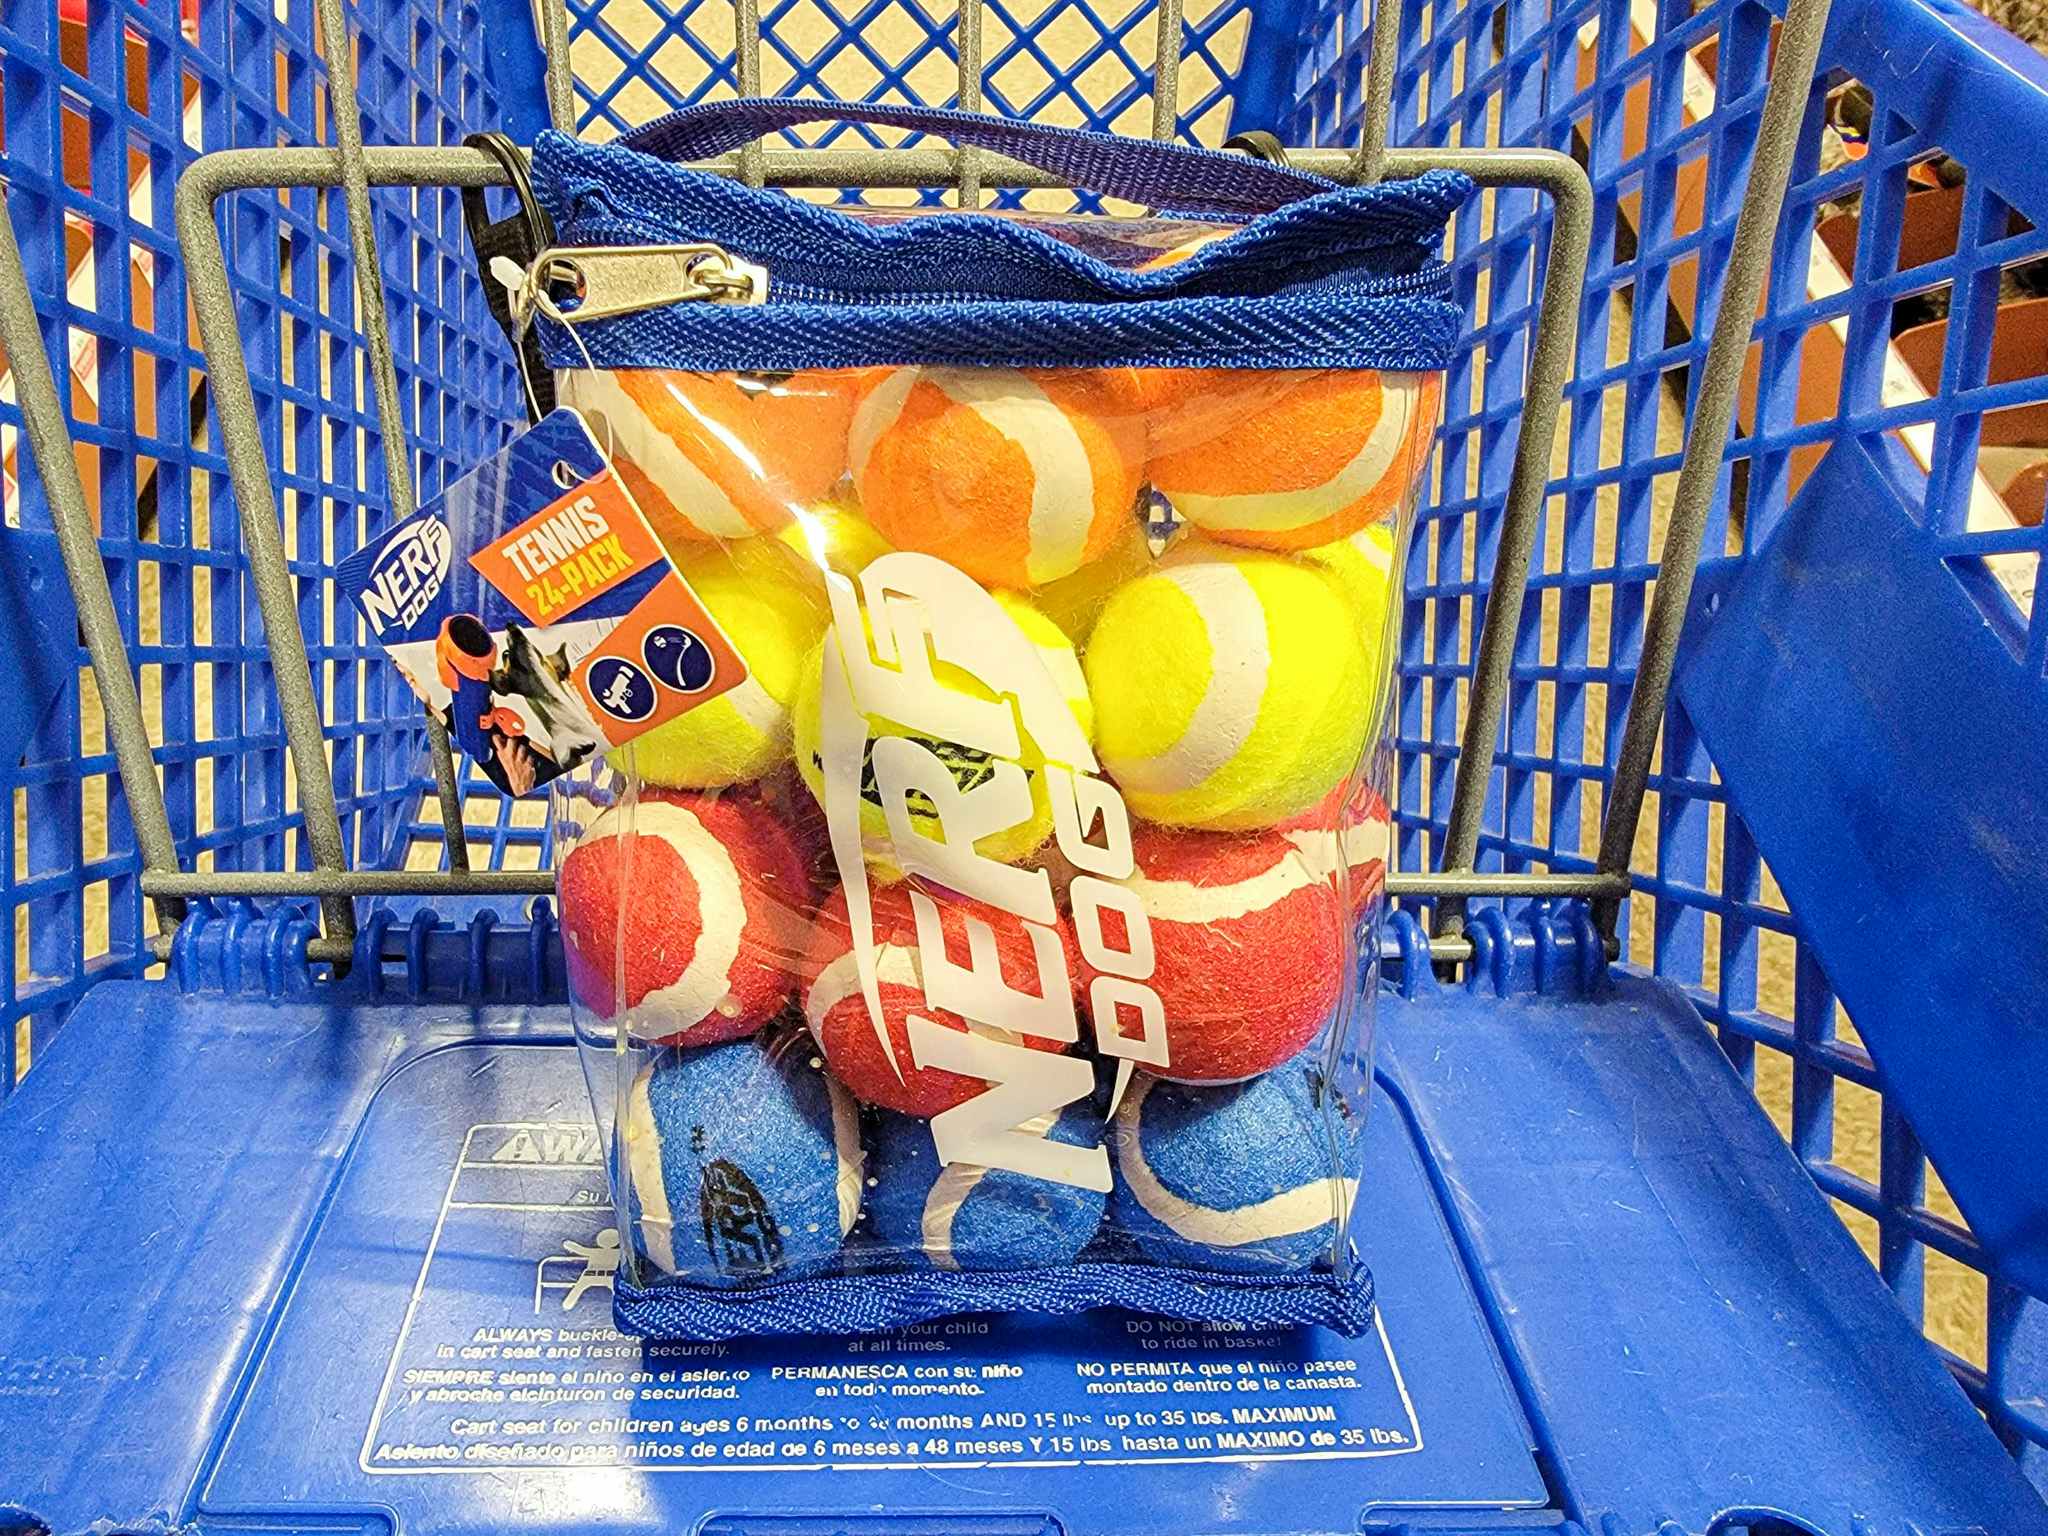 bag of nerf tennis balls